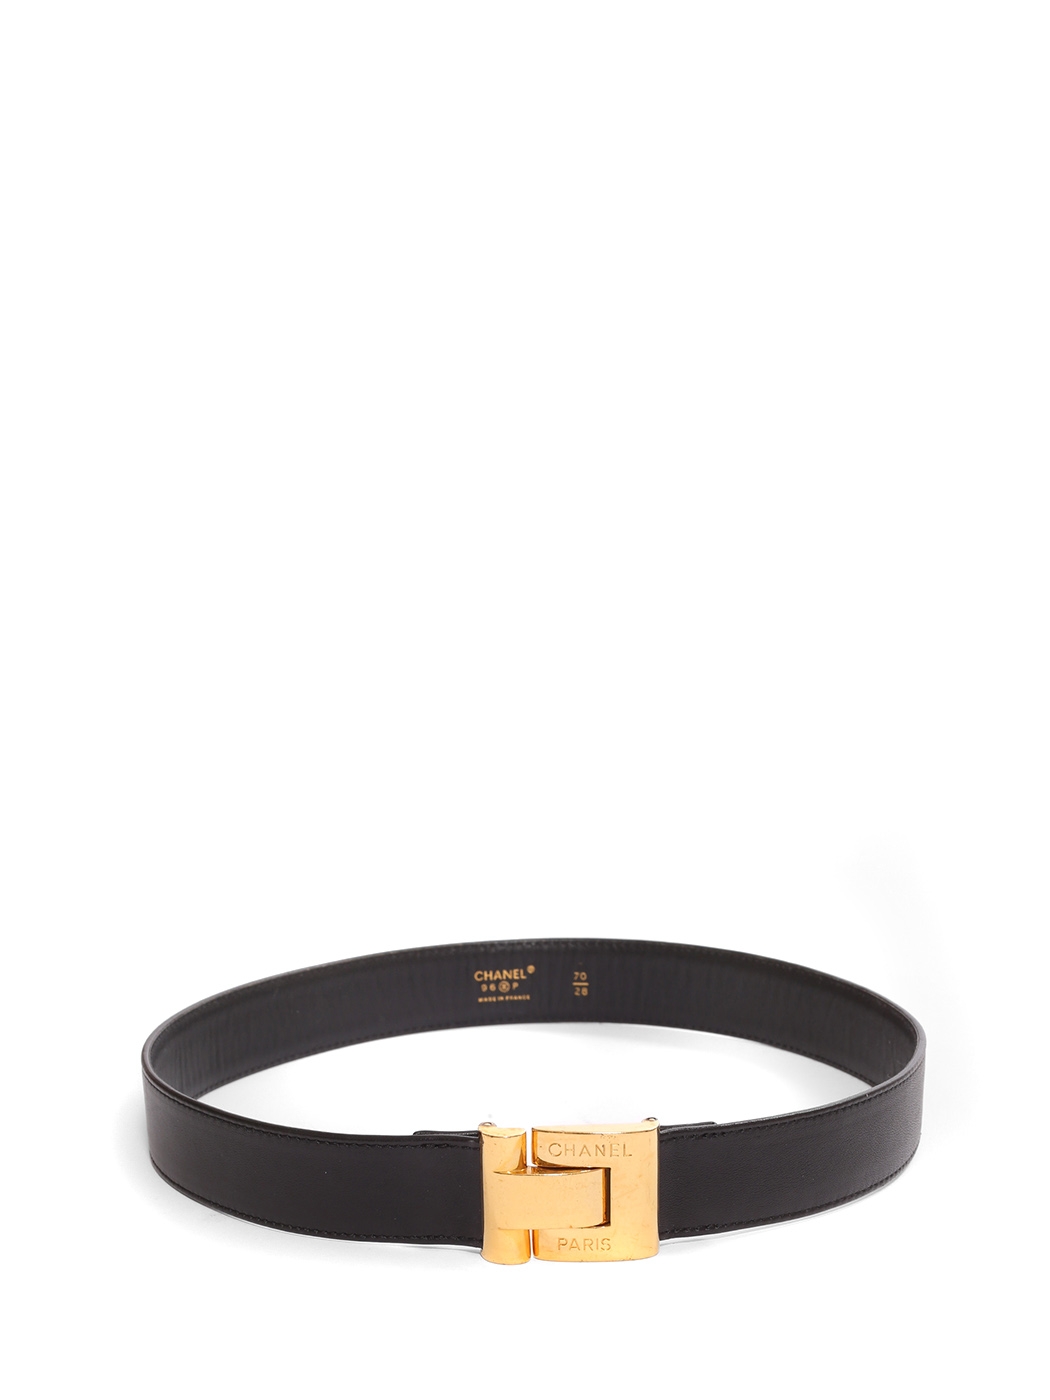 Belt Chanel bản 3cm size 75  Tín đồ hàng hiệu